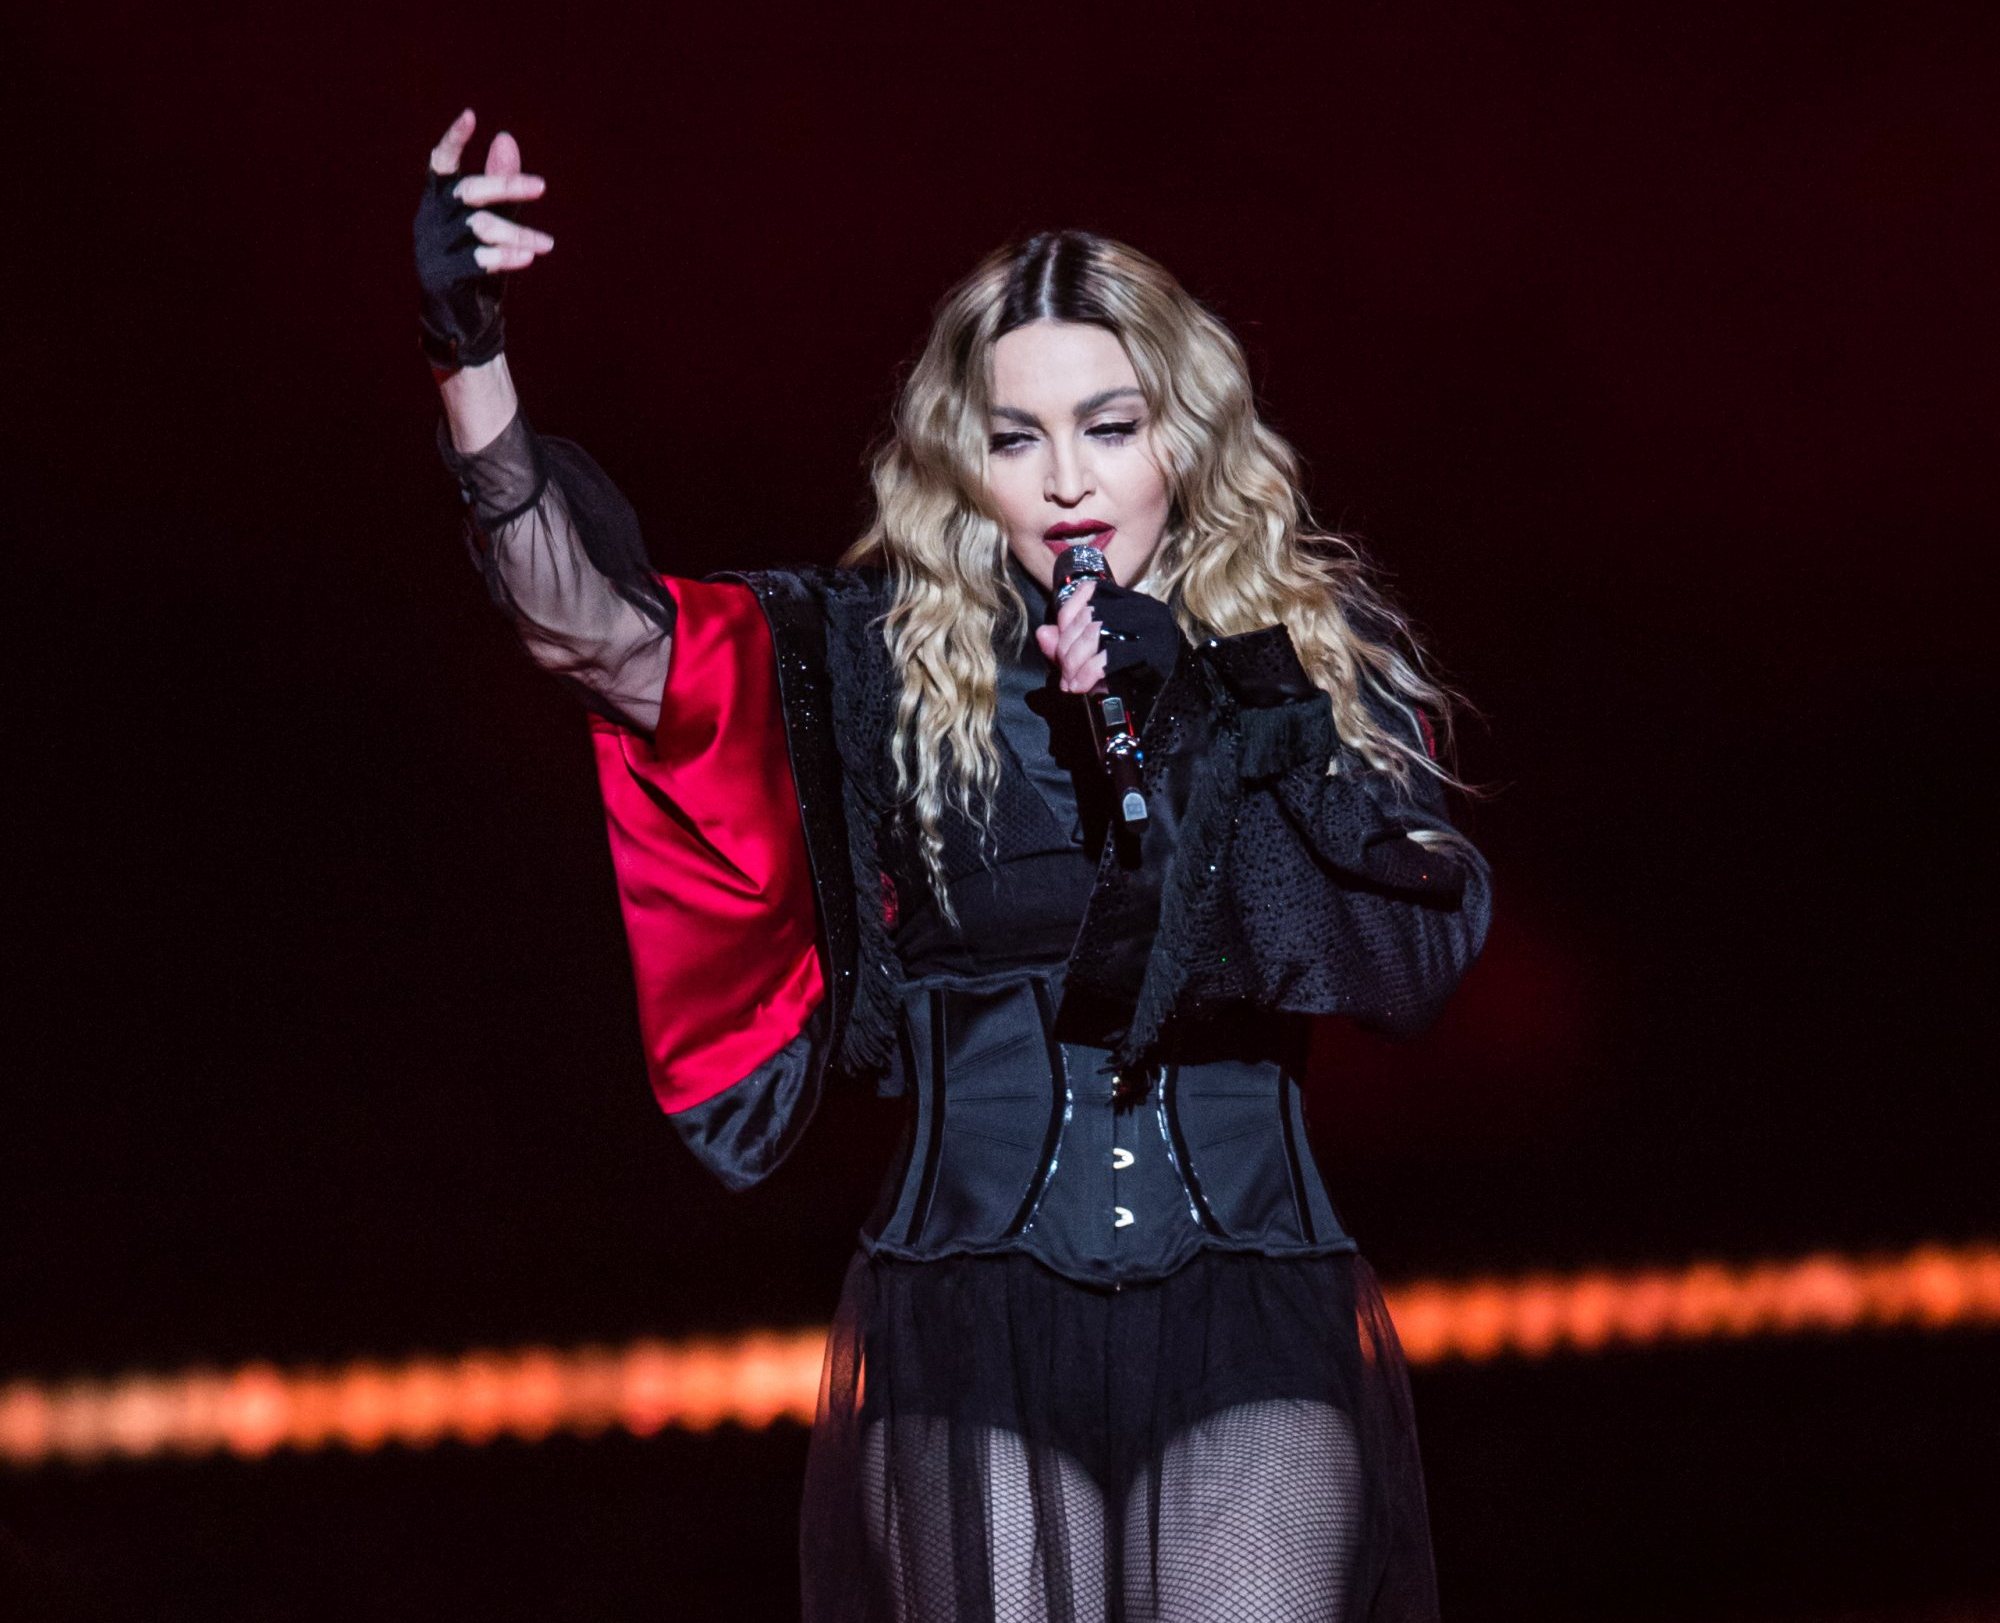 VIDEO: Madonna și-a înjurat fanii după ce a întârziat la concert: ”Shut the f**k up!”